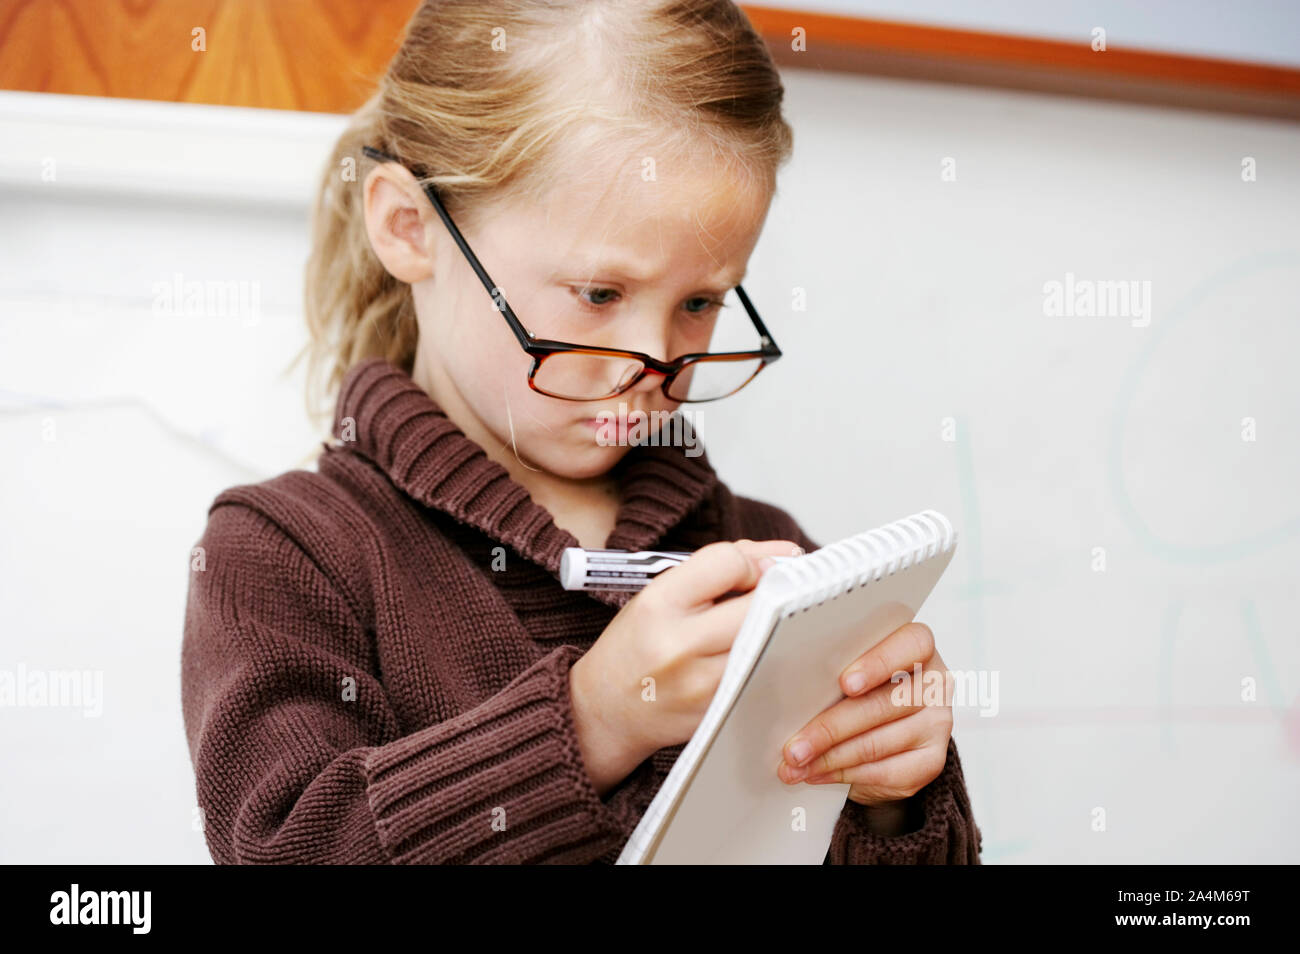 Chica tomando notas - periodista - concentración - jugar crecido Foto de stock